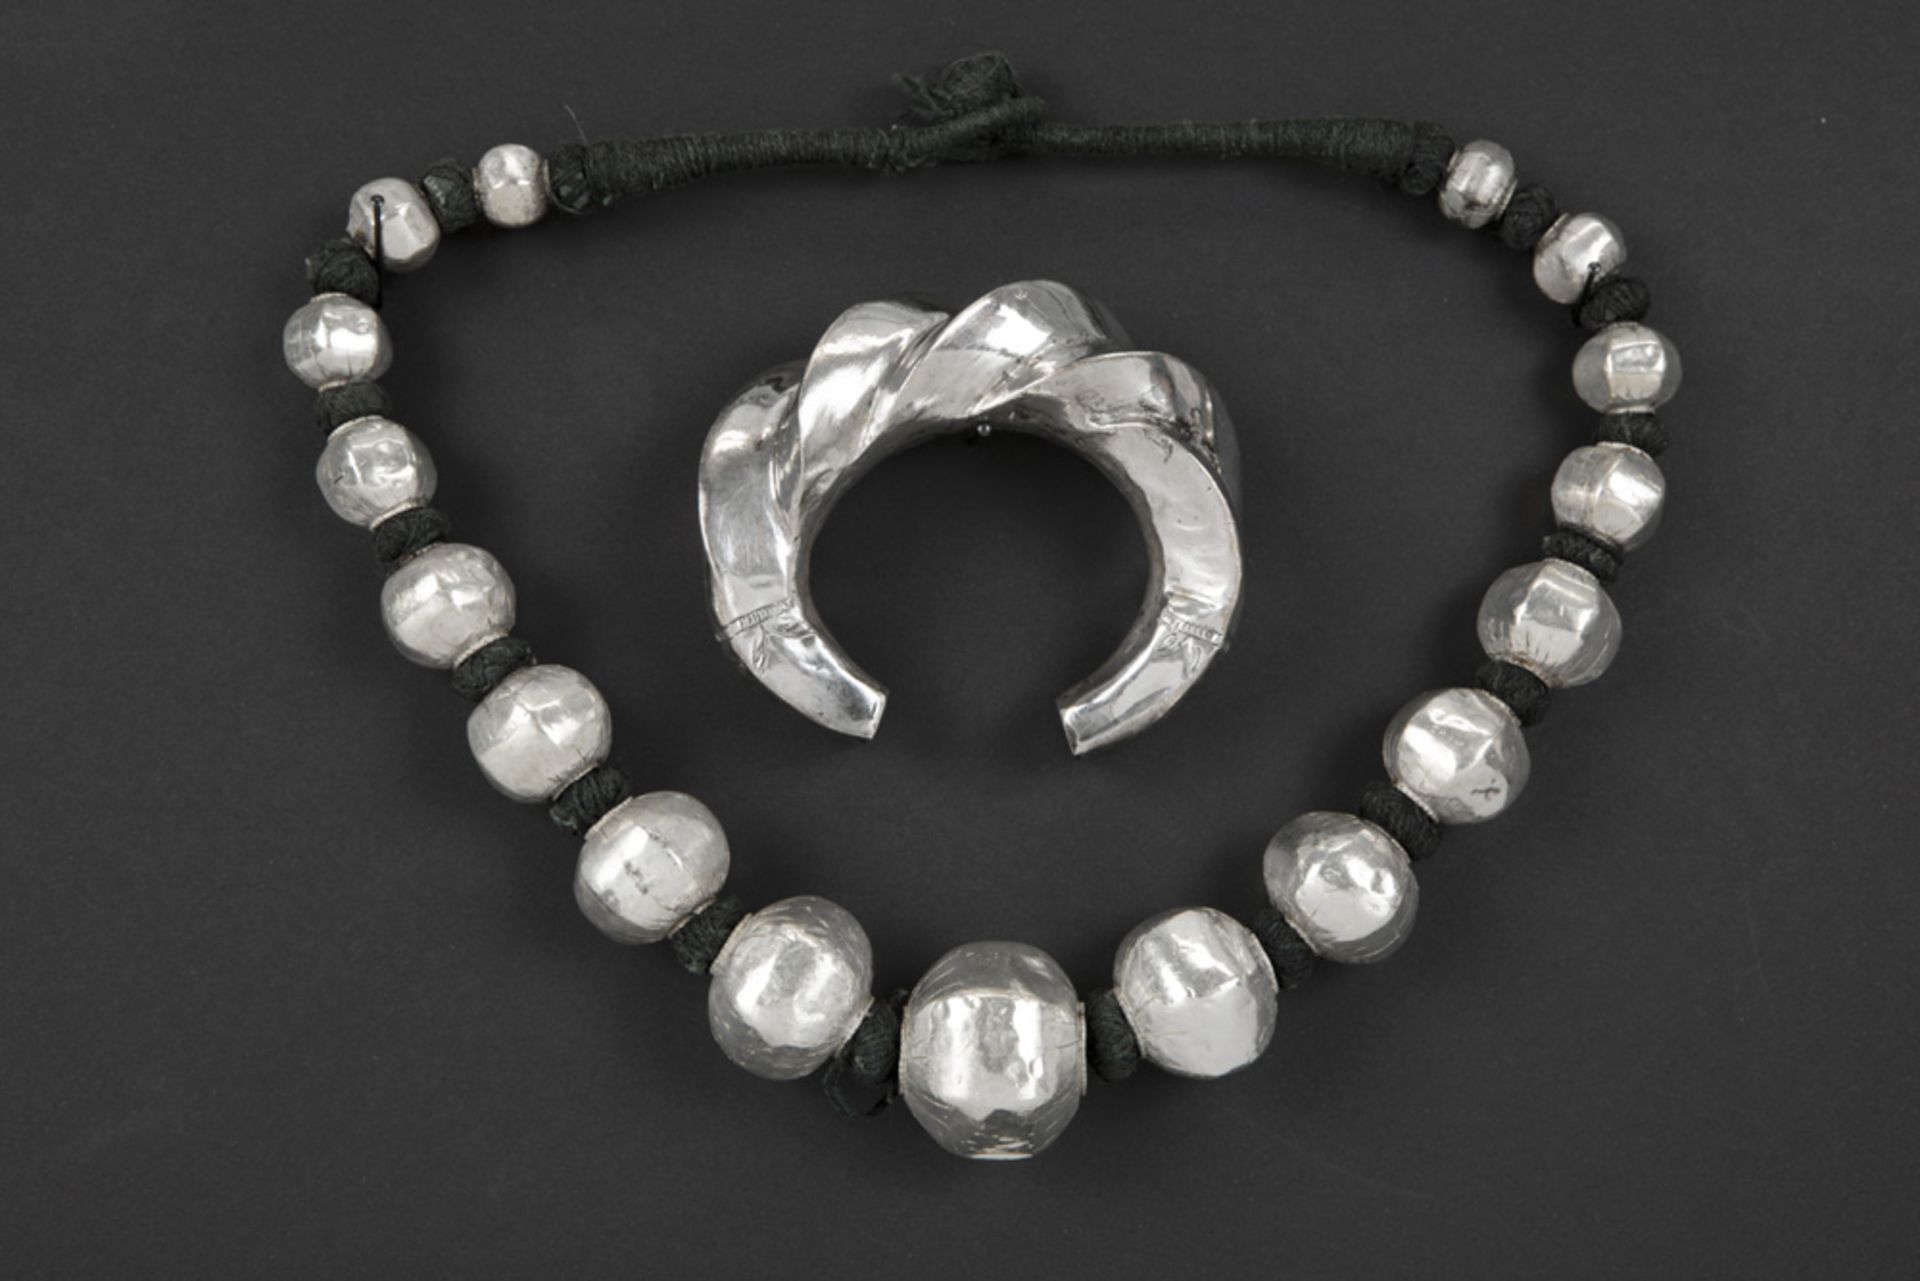 ethnic Indian necklace and bracelet in silver || Lot (2) met een etnisch-Indische collier en